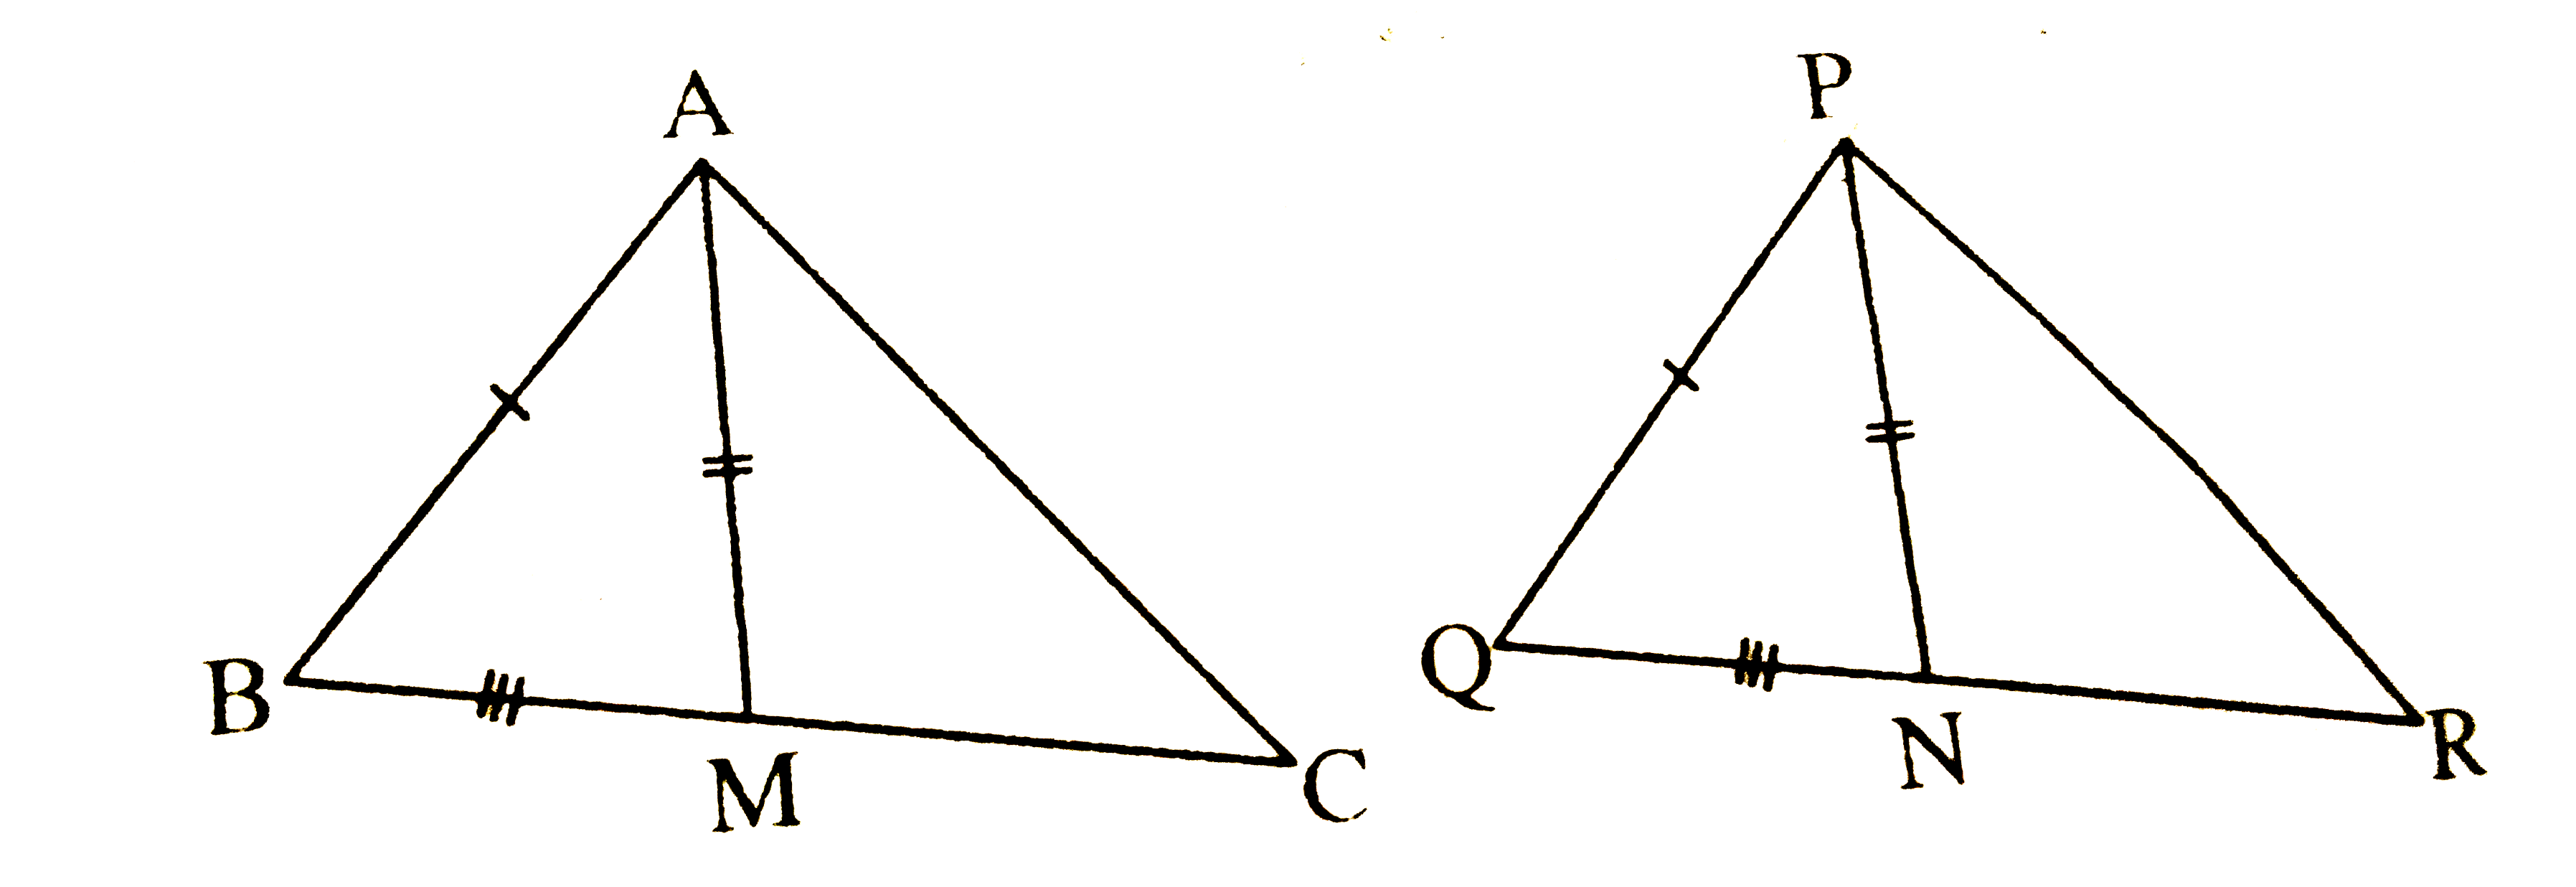 एक त्रिभुज ABC की दो भुजाएँ AB और BC तथा माध्यिका AM क्रमश: एक-दूसरे त्रिभुज की भुजाओं PQ और QR तथा माध्यिका PN के बराबर हैं (देखिए चित्र) | दर्शाइए कि   (i) DeltaABM~=DeltaPQN         (ii) DeltaABC~=DeltaPQR